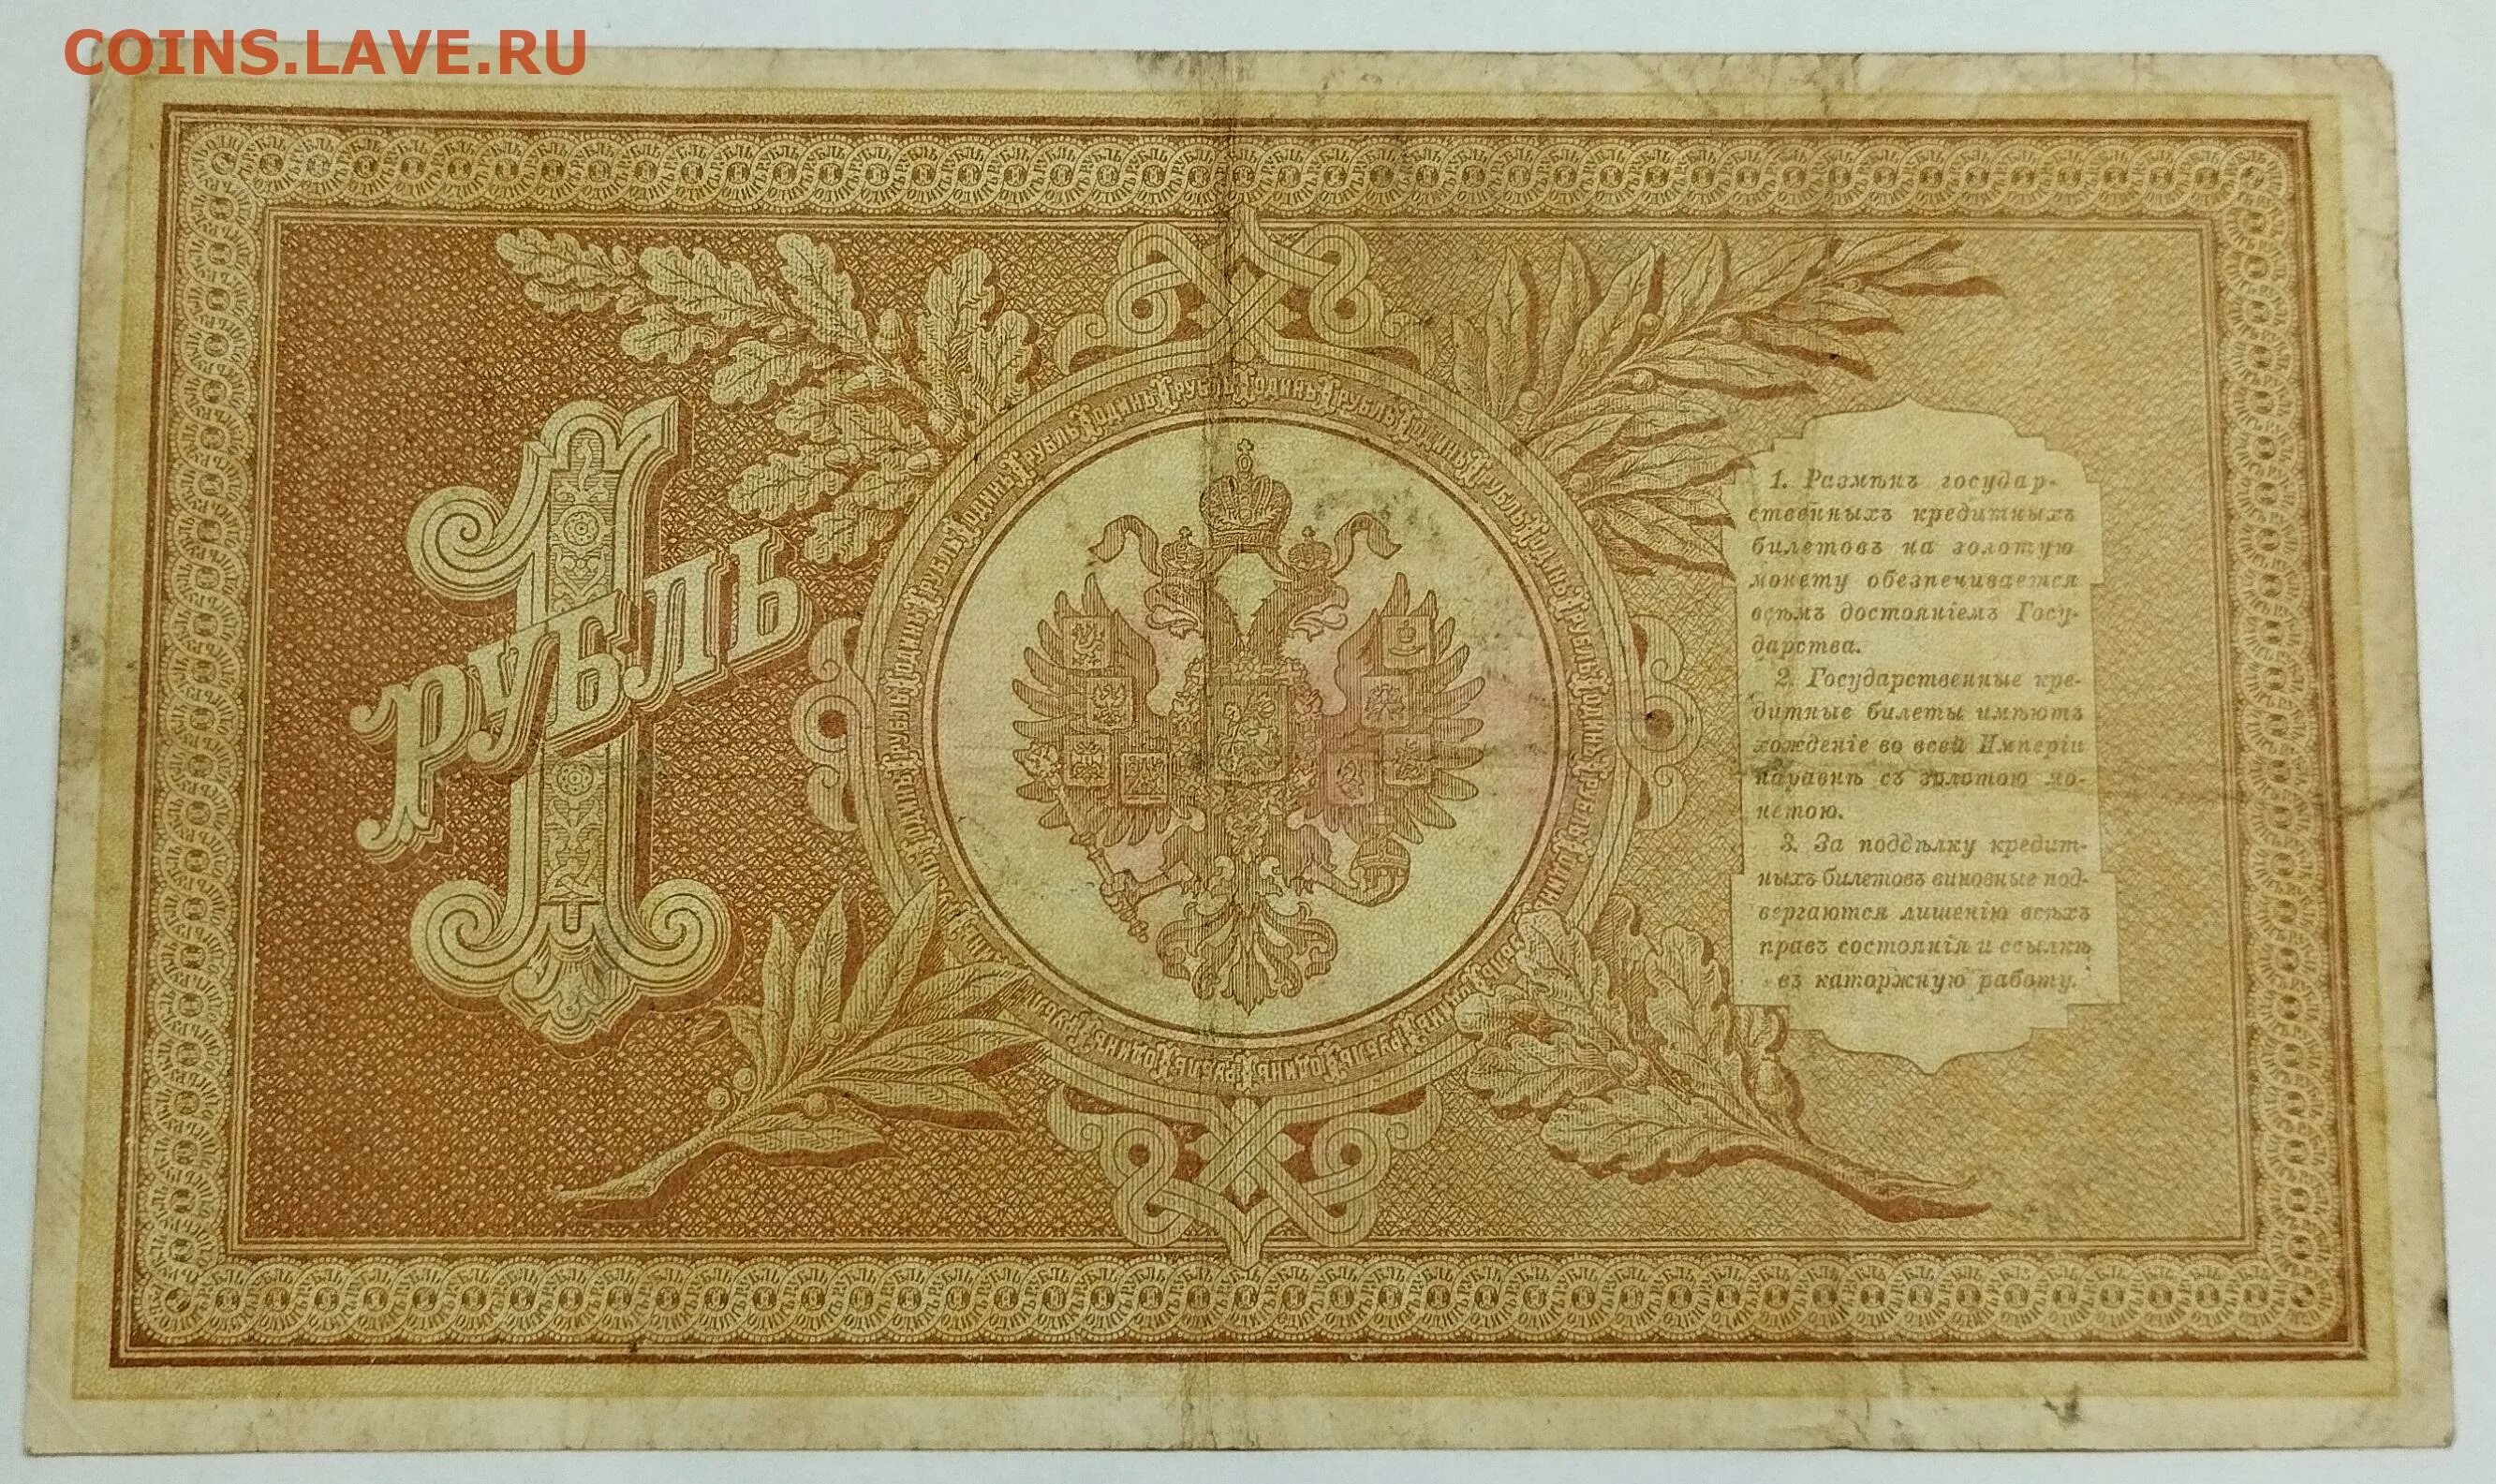 1 Рубль Плеске. Банкнота 1 рубль 1898 года стоимость. Сколько стоит купюра 500 рублей 1898 года на сайте мешок. 20 в русских рублях